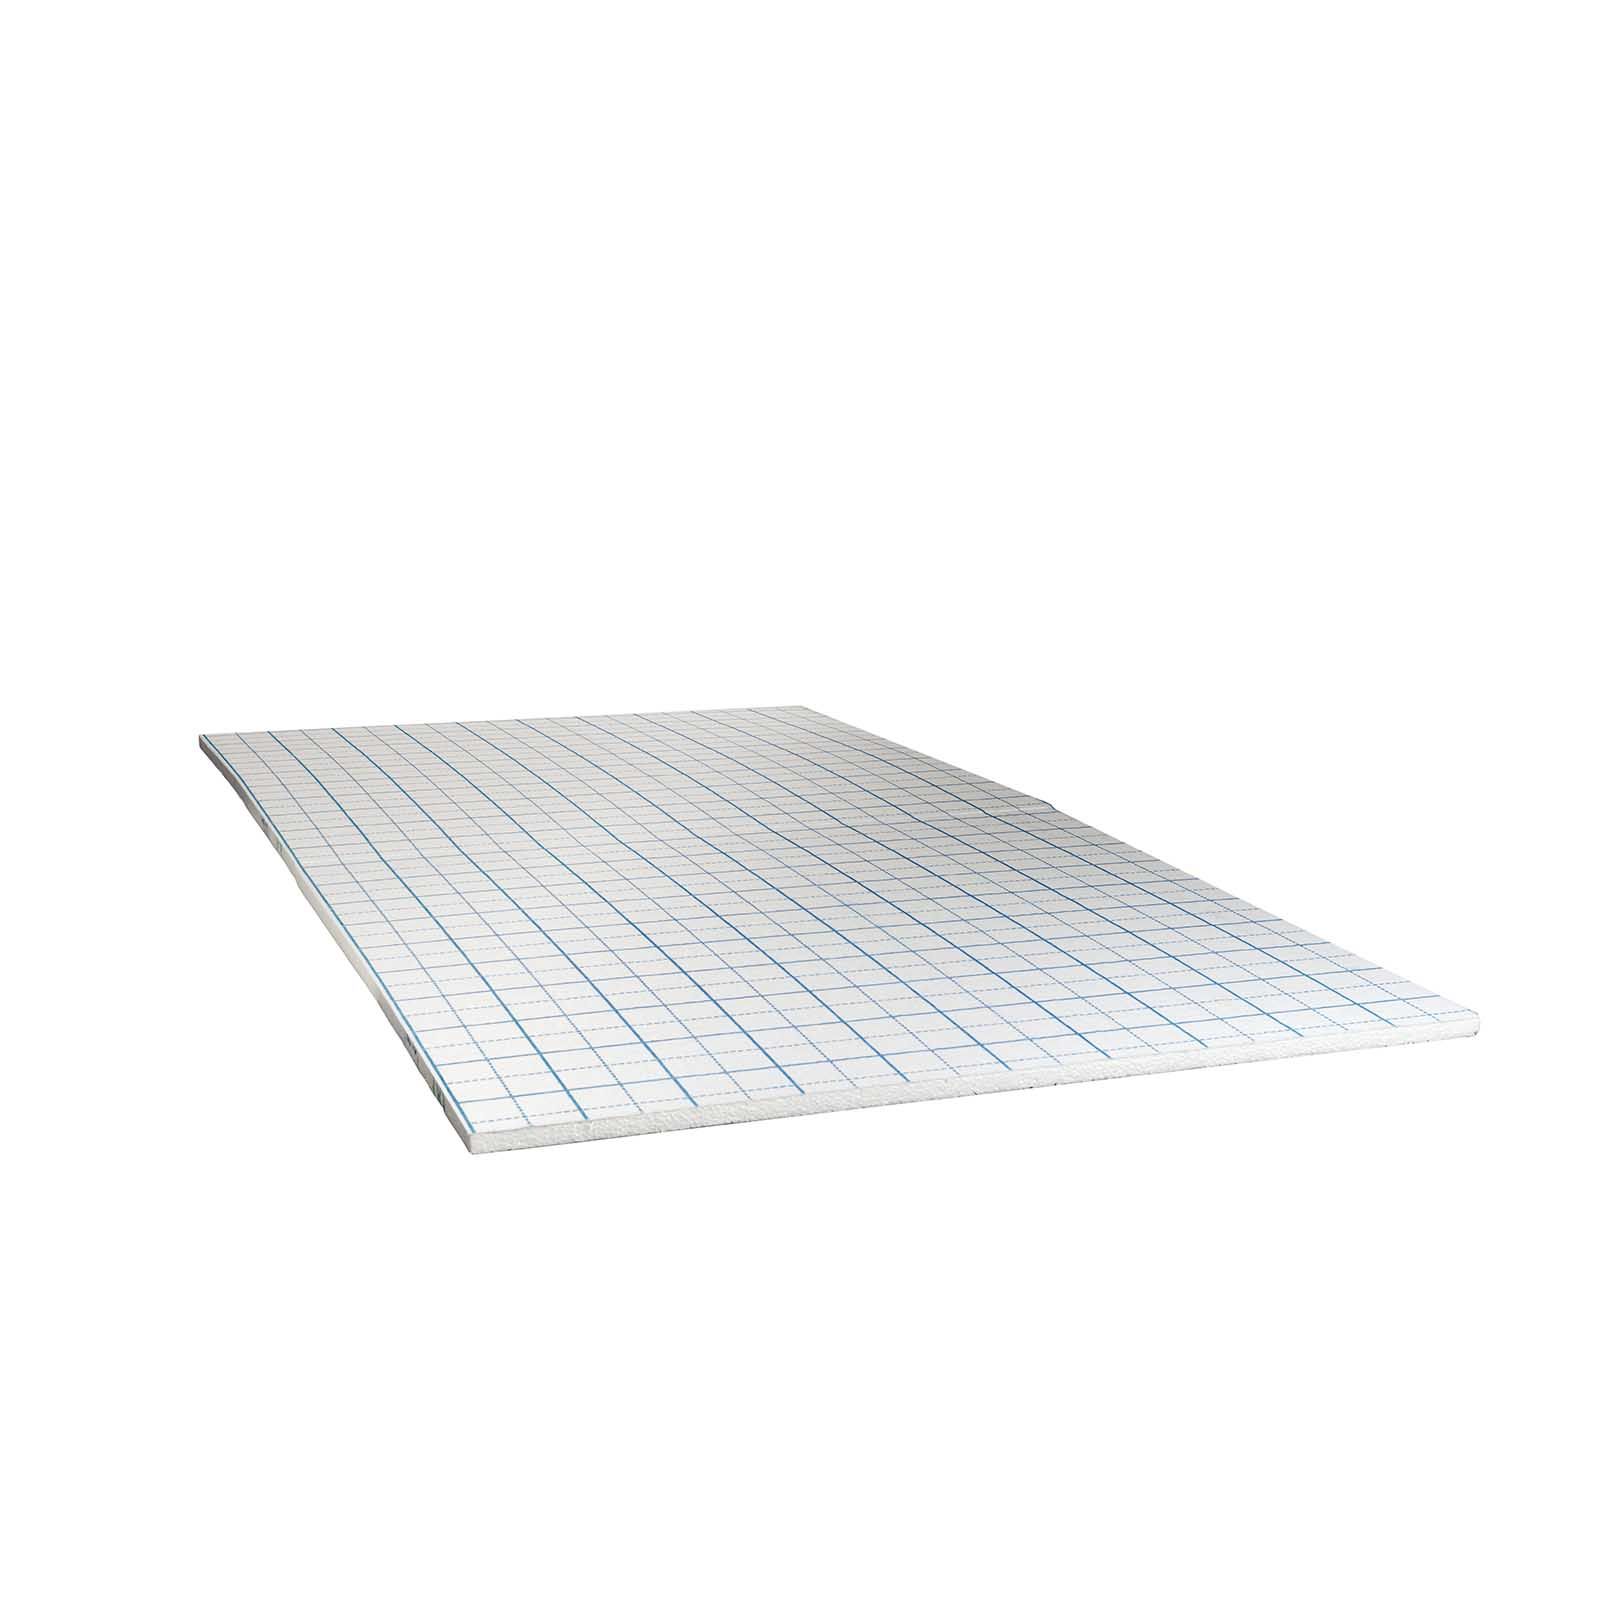 20 mm Klettplatte Faltplatte 20-2 WLG 040 10 m² Fußbodenheizung Klettsystem